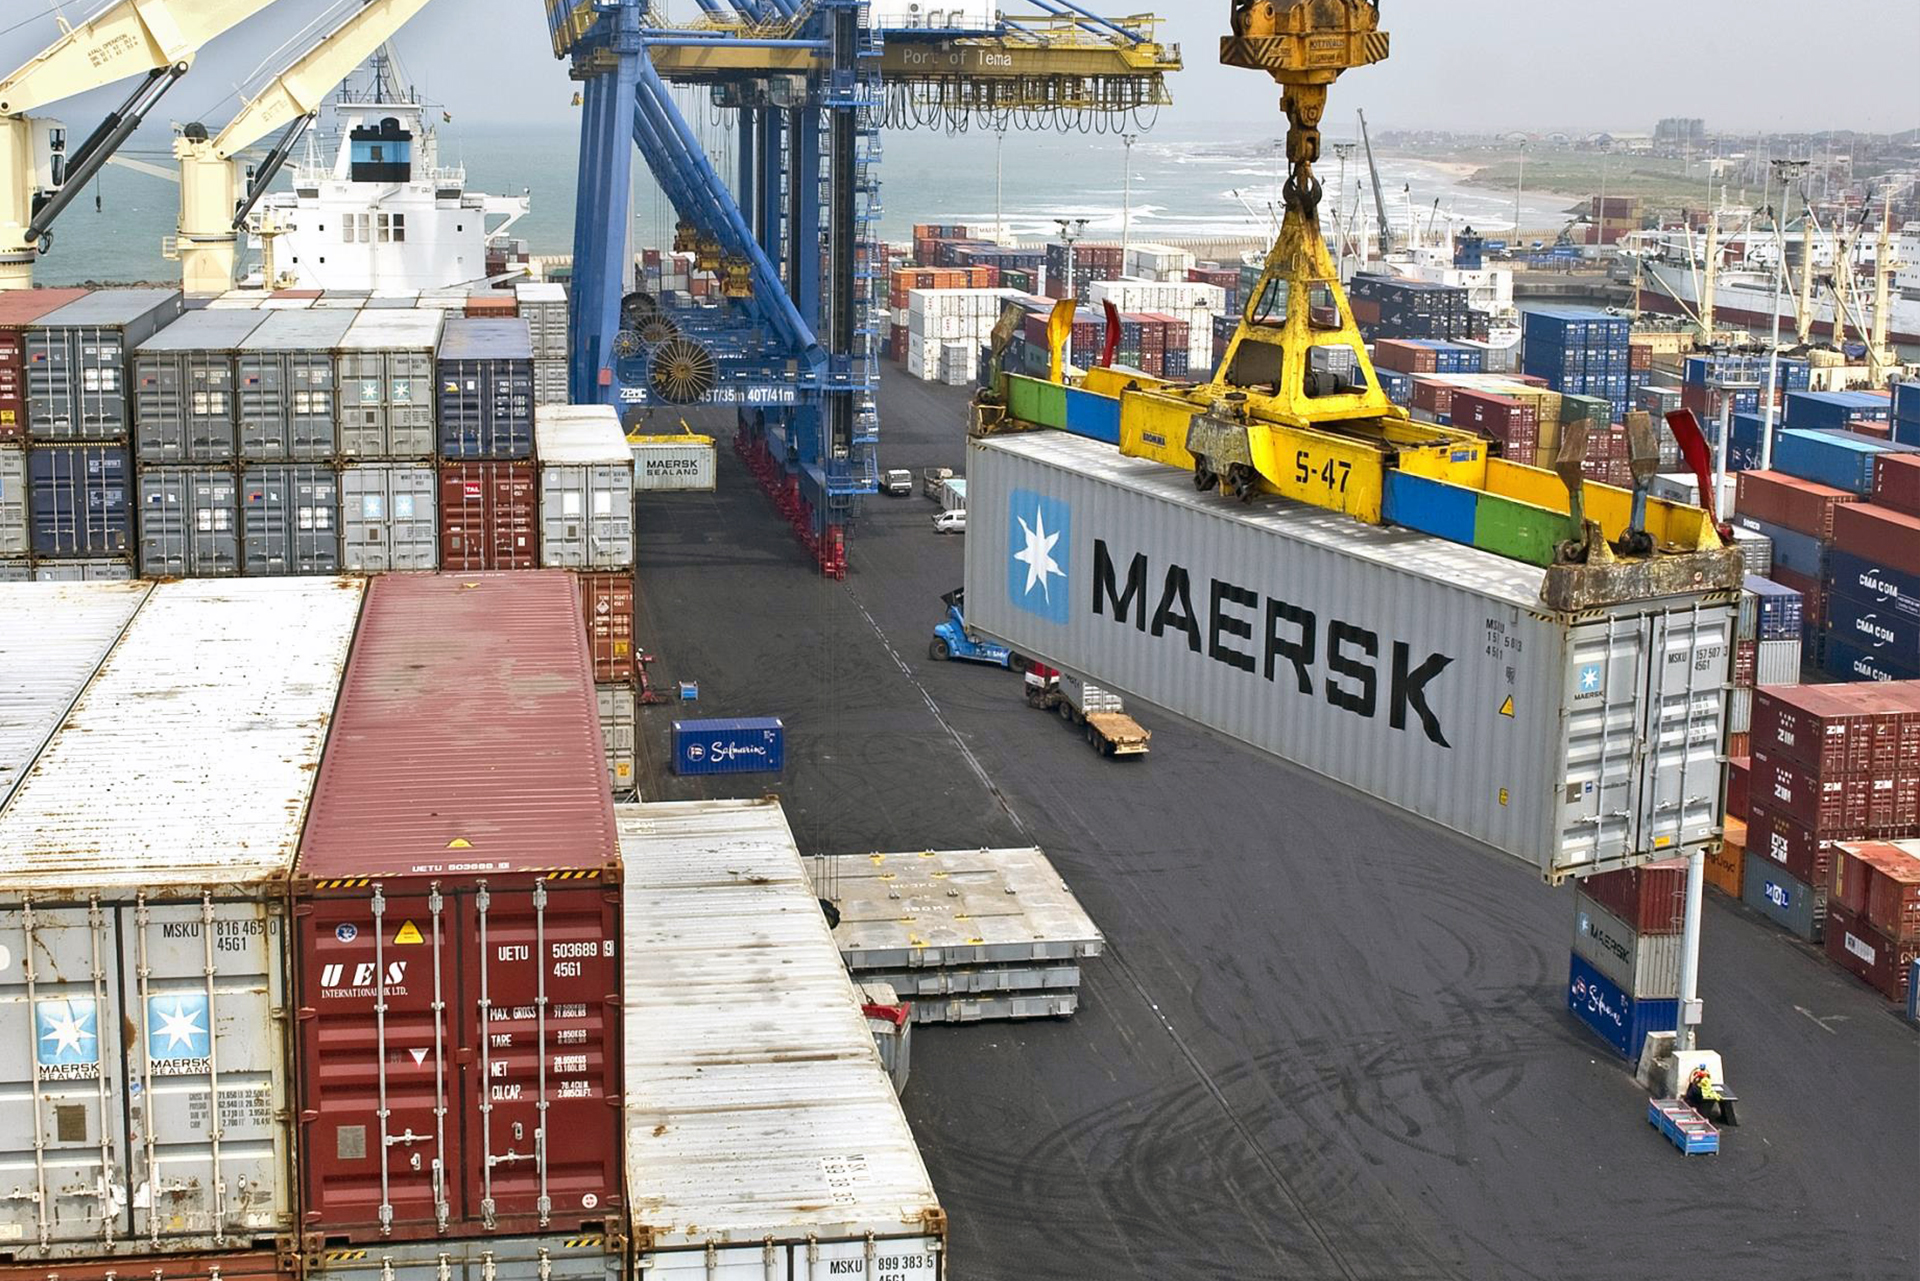 Maersk inaugura armazém com 19,4 mil metros quadrados na região de São Paulo